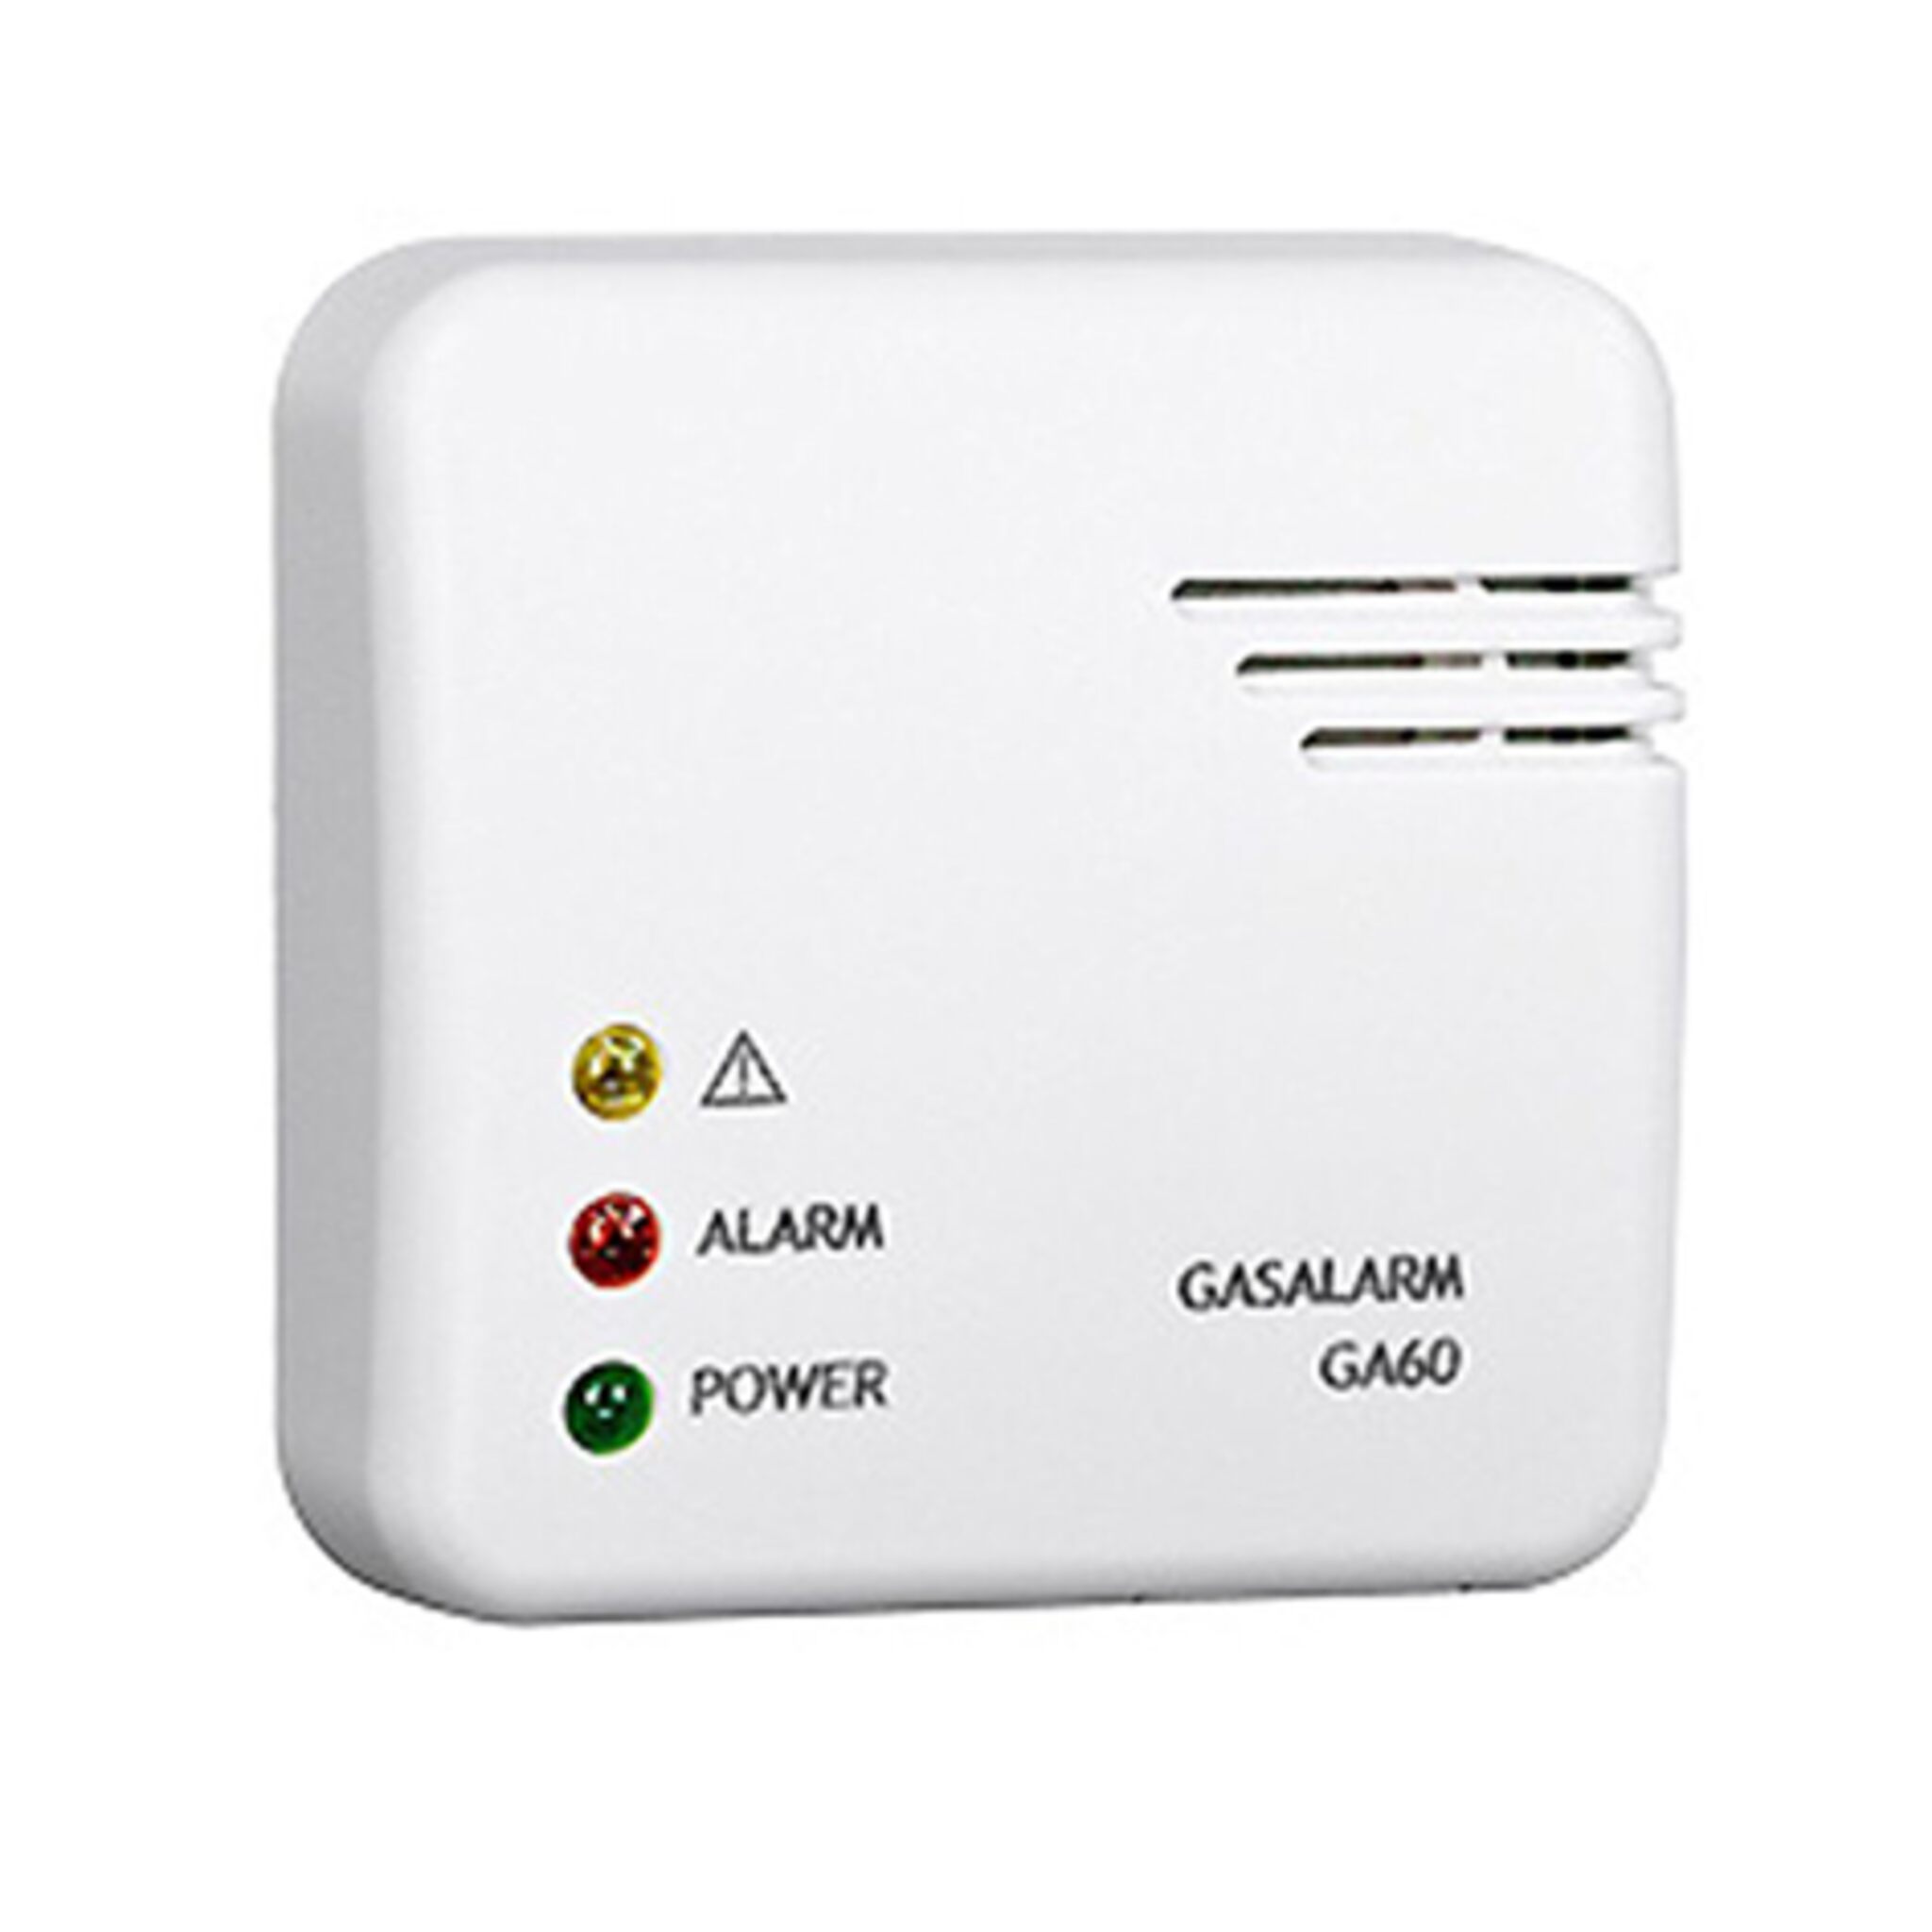 Gas alarm 12 V / 230 V